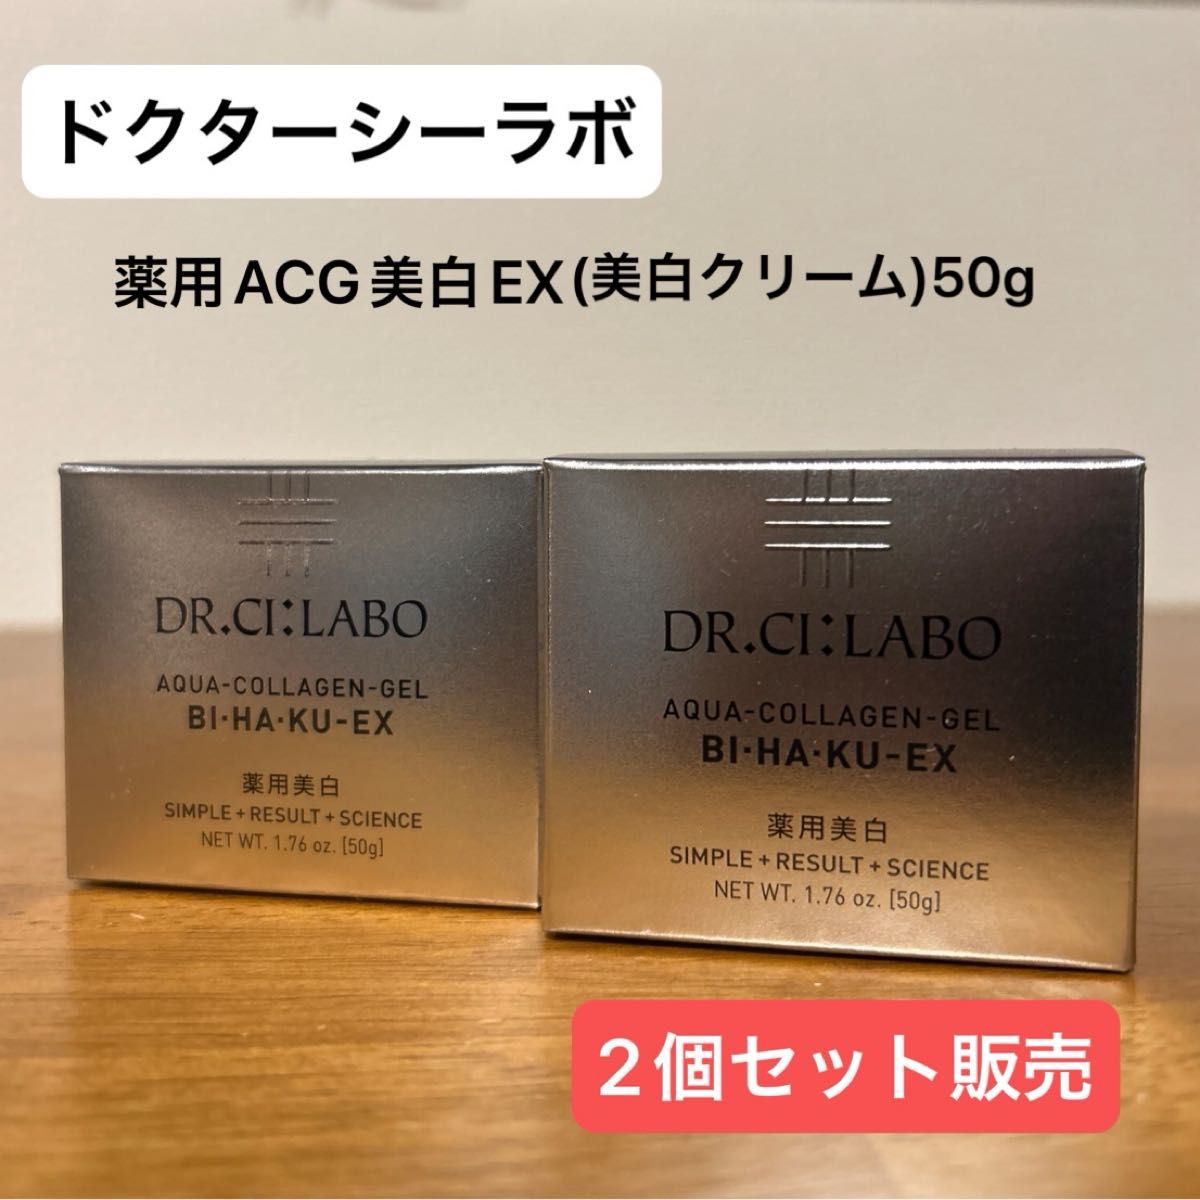 【ドクターシーラボ2個セット】薬用ACG美白EX(美白クリーム)50g シミ・くすみ